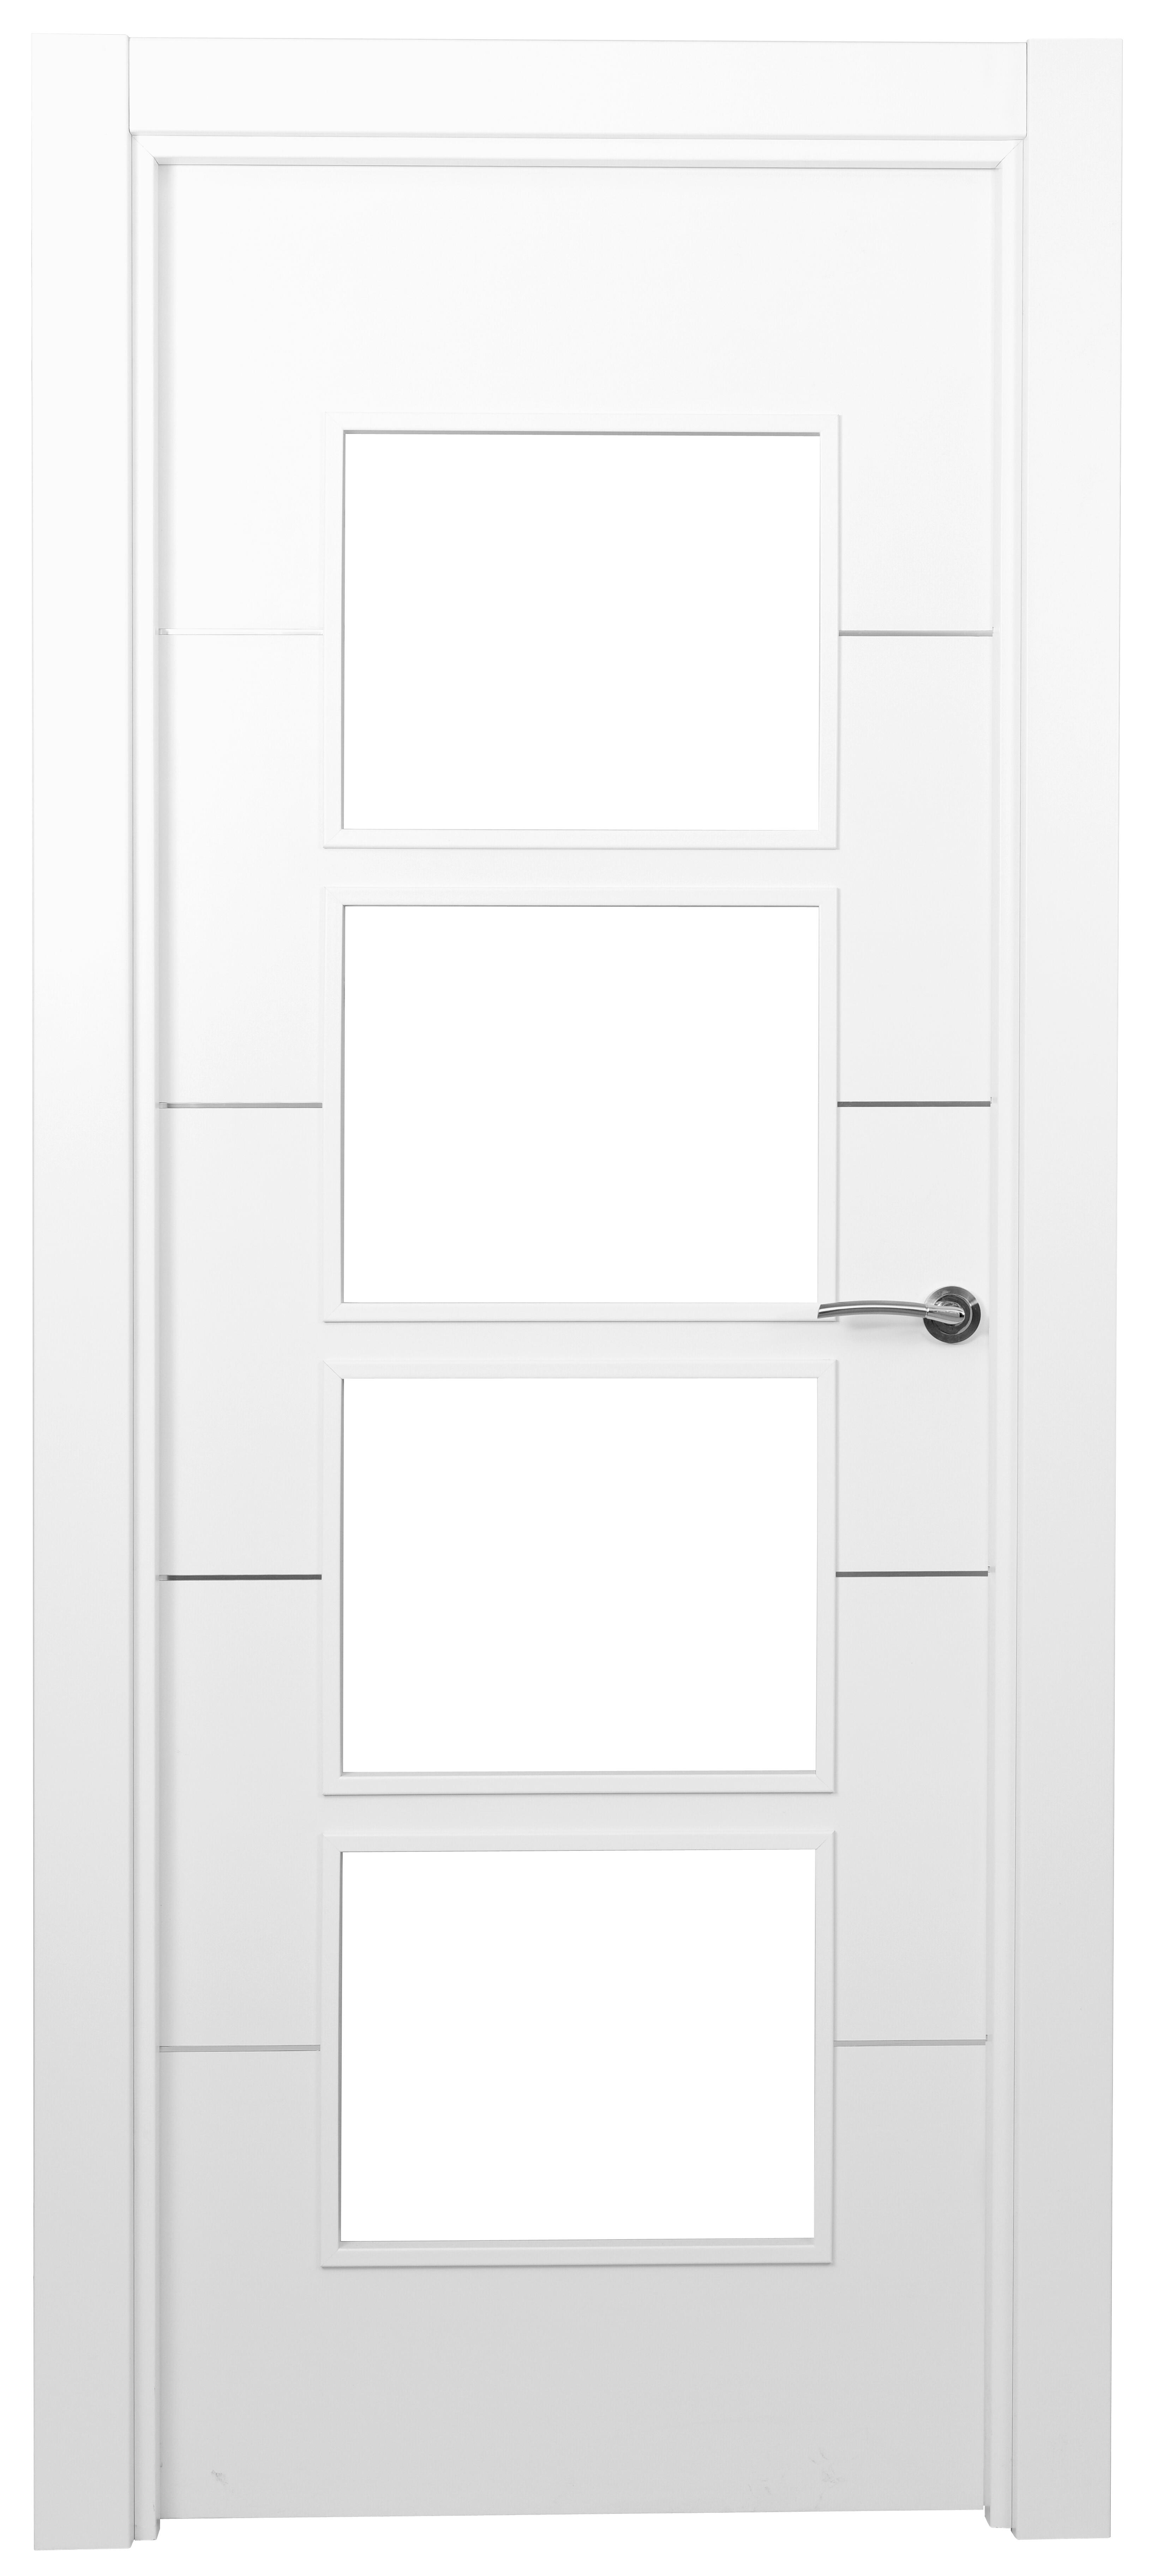 Puerta paris premium blanco apertura izquierda con cristal 9x72.5cm